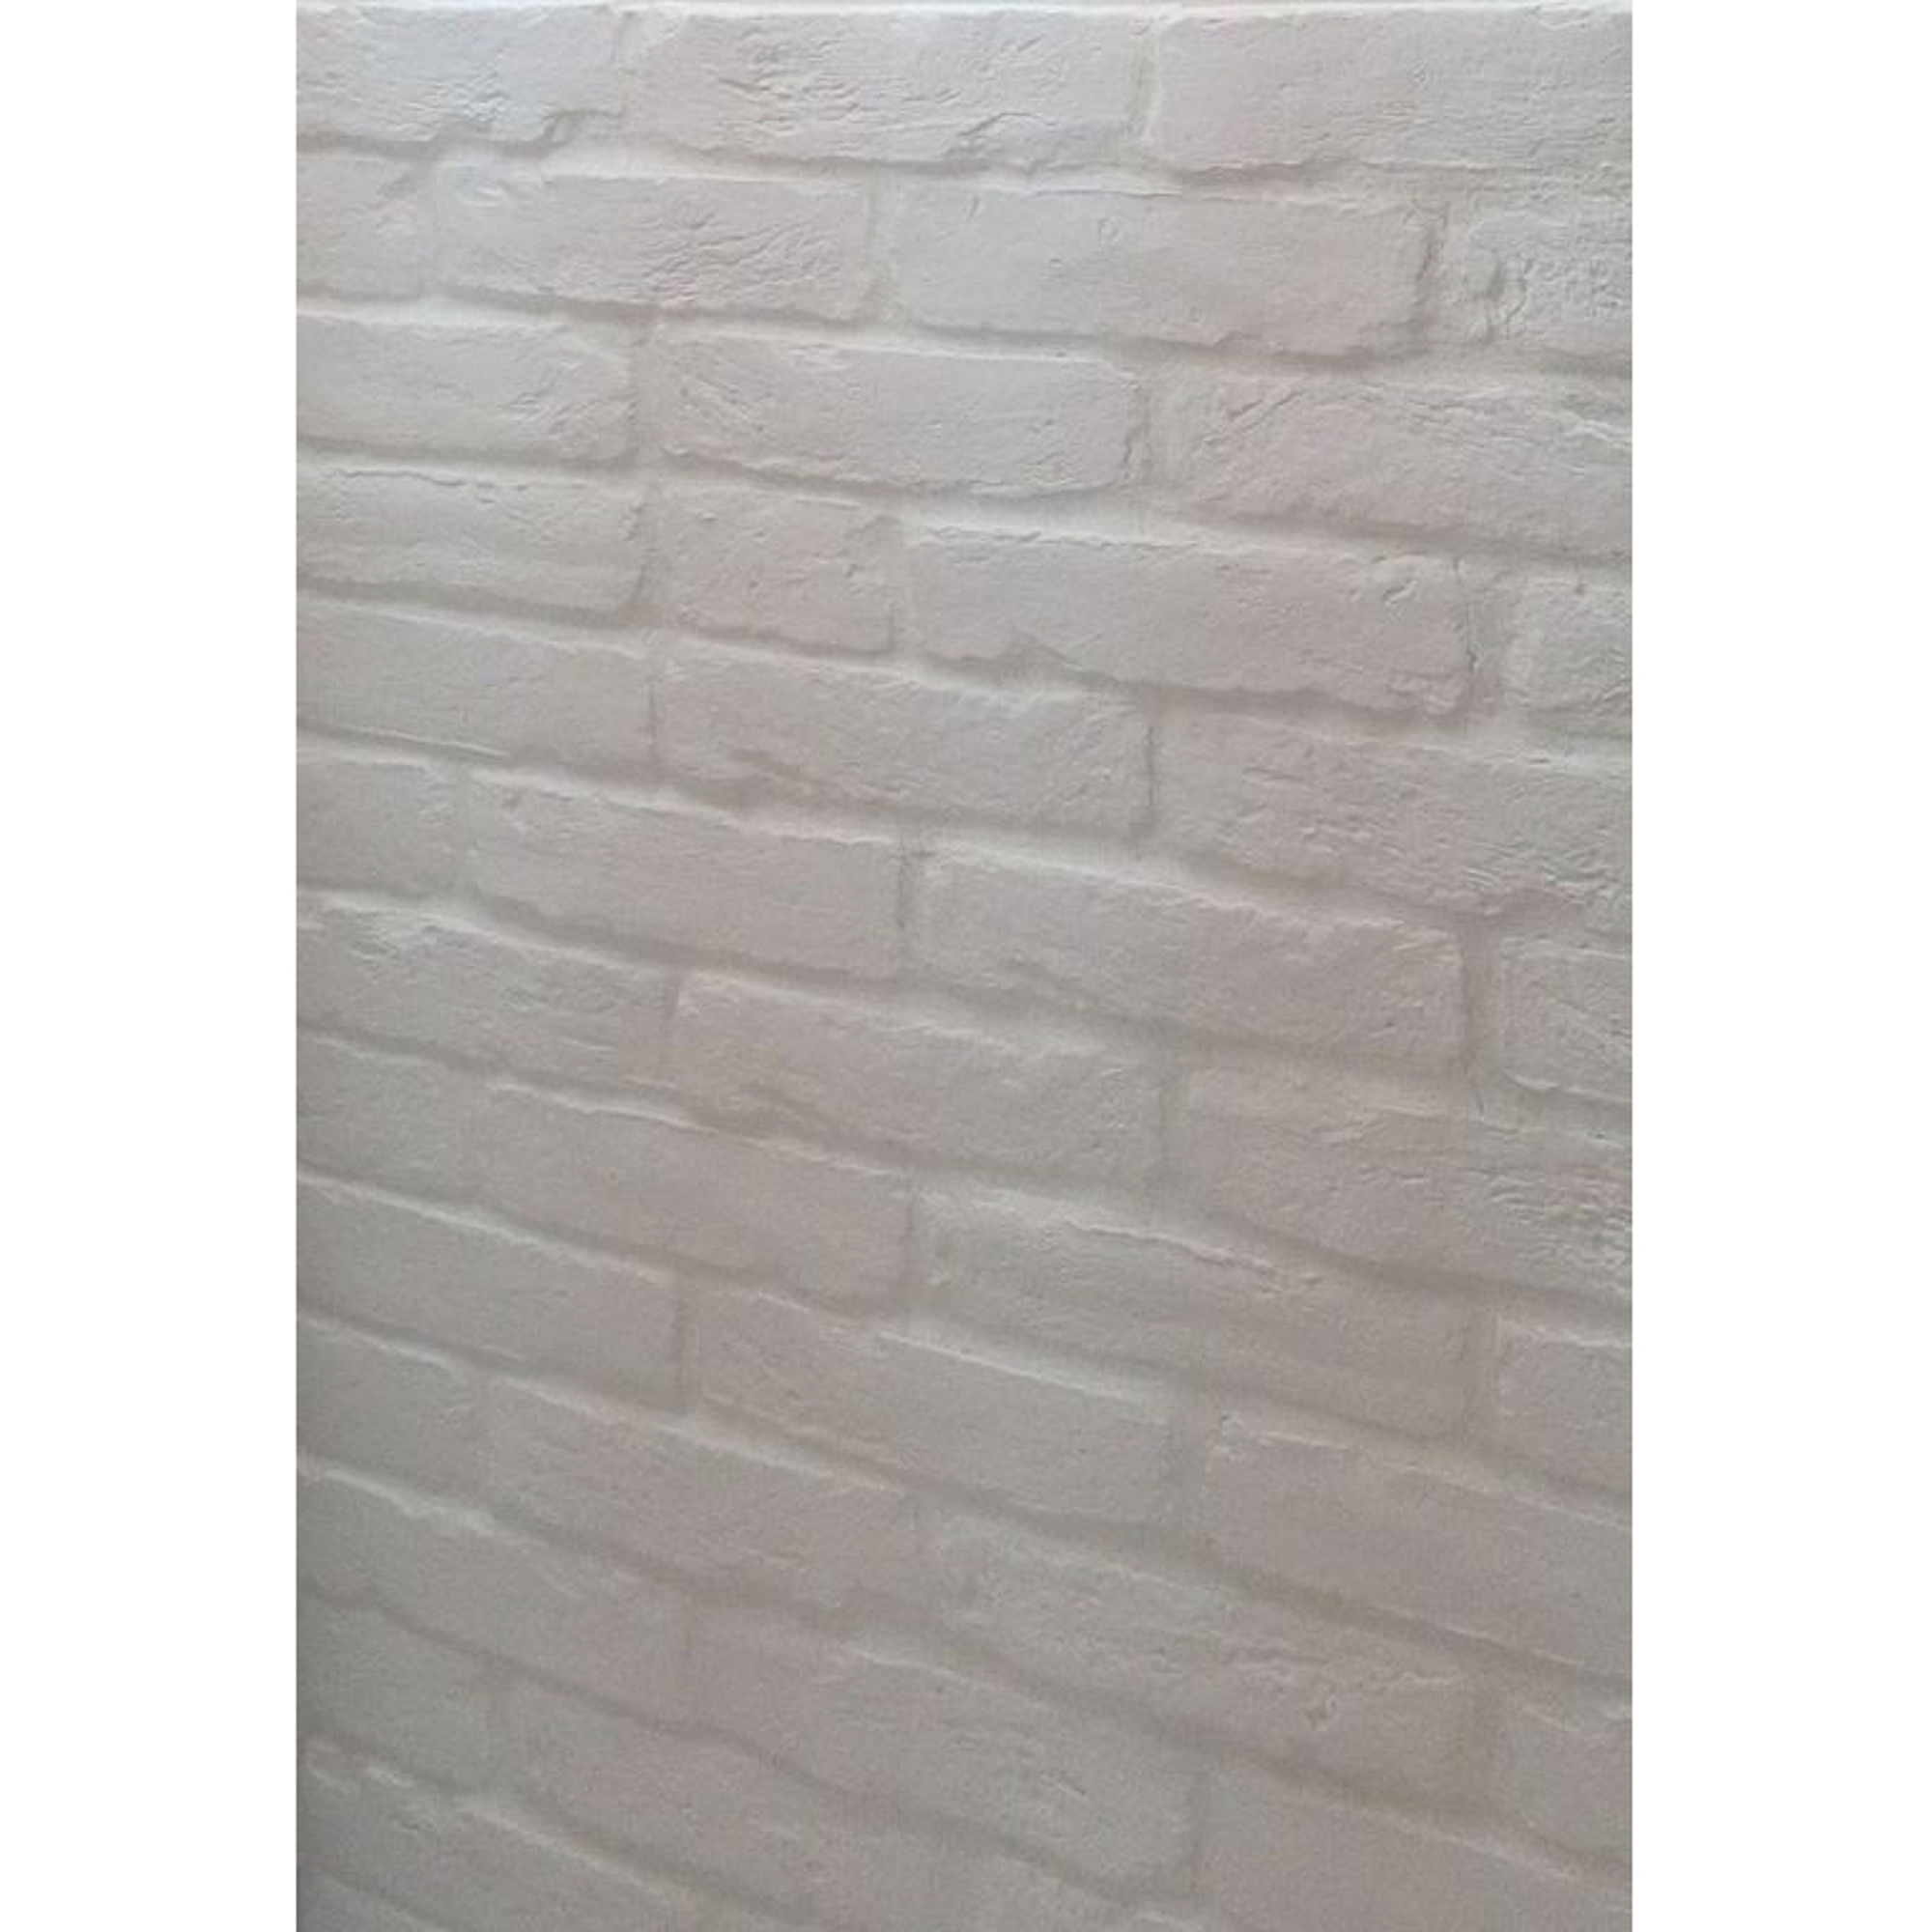 Плитка Керамика Императорский кирпич Белый Тычок 12,8х7,6 см плитка керамика императорский кирпич 12 8x7 6 см